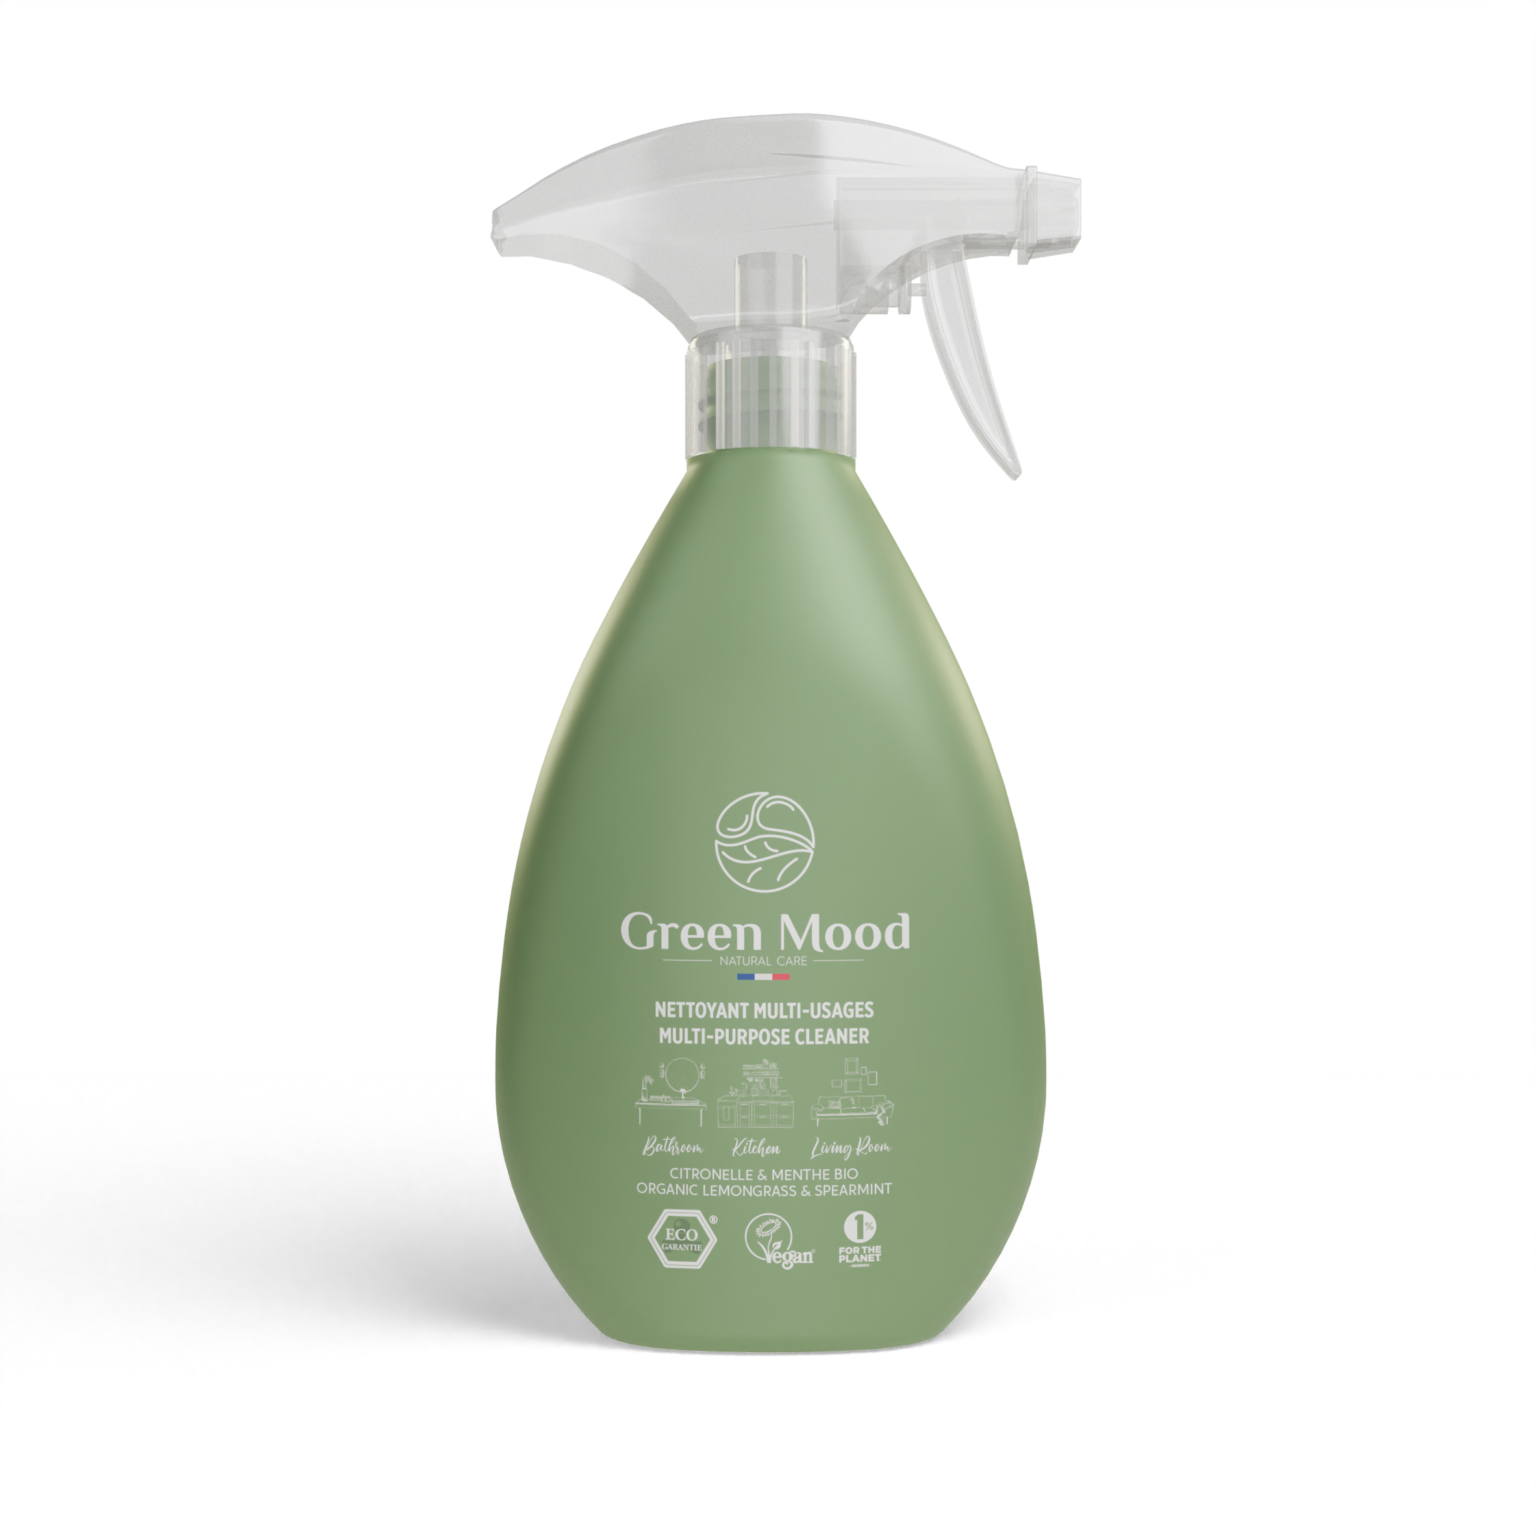 Spray nettoyant multi-usages écologique citronnelle et menthe